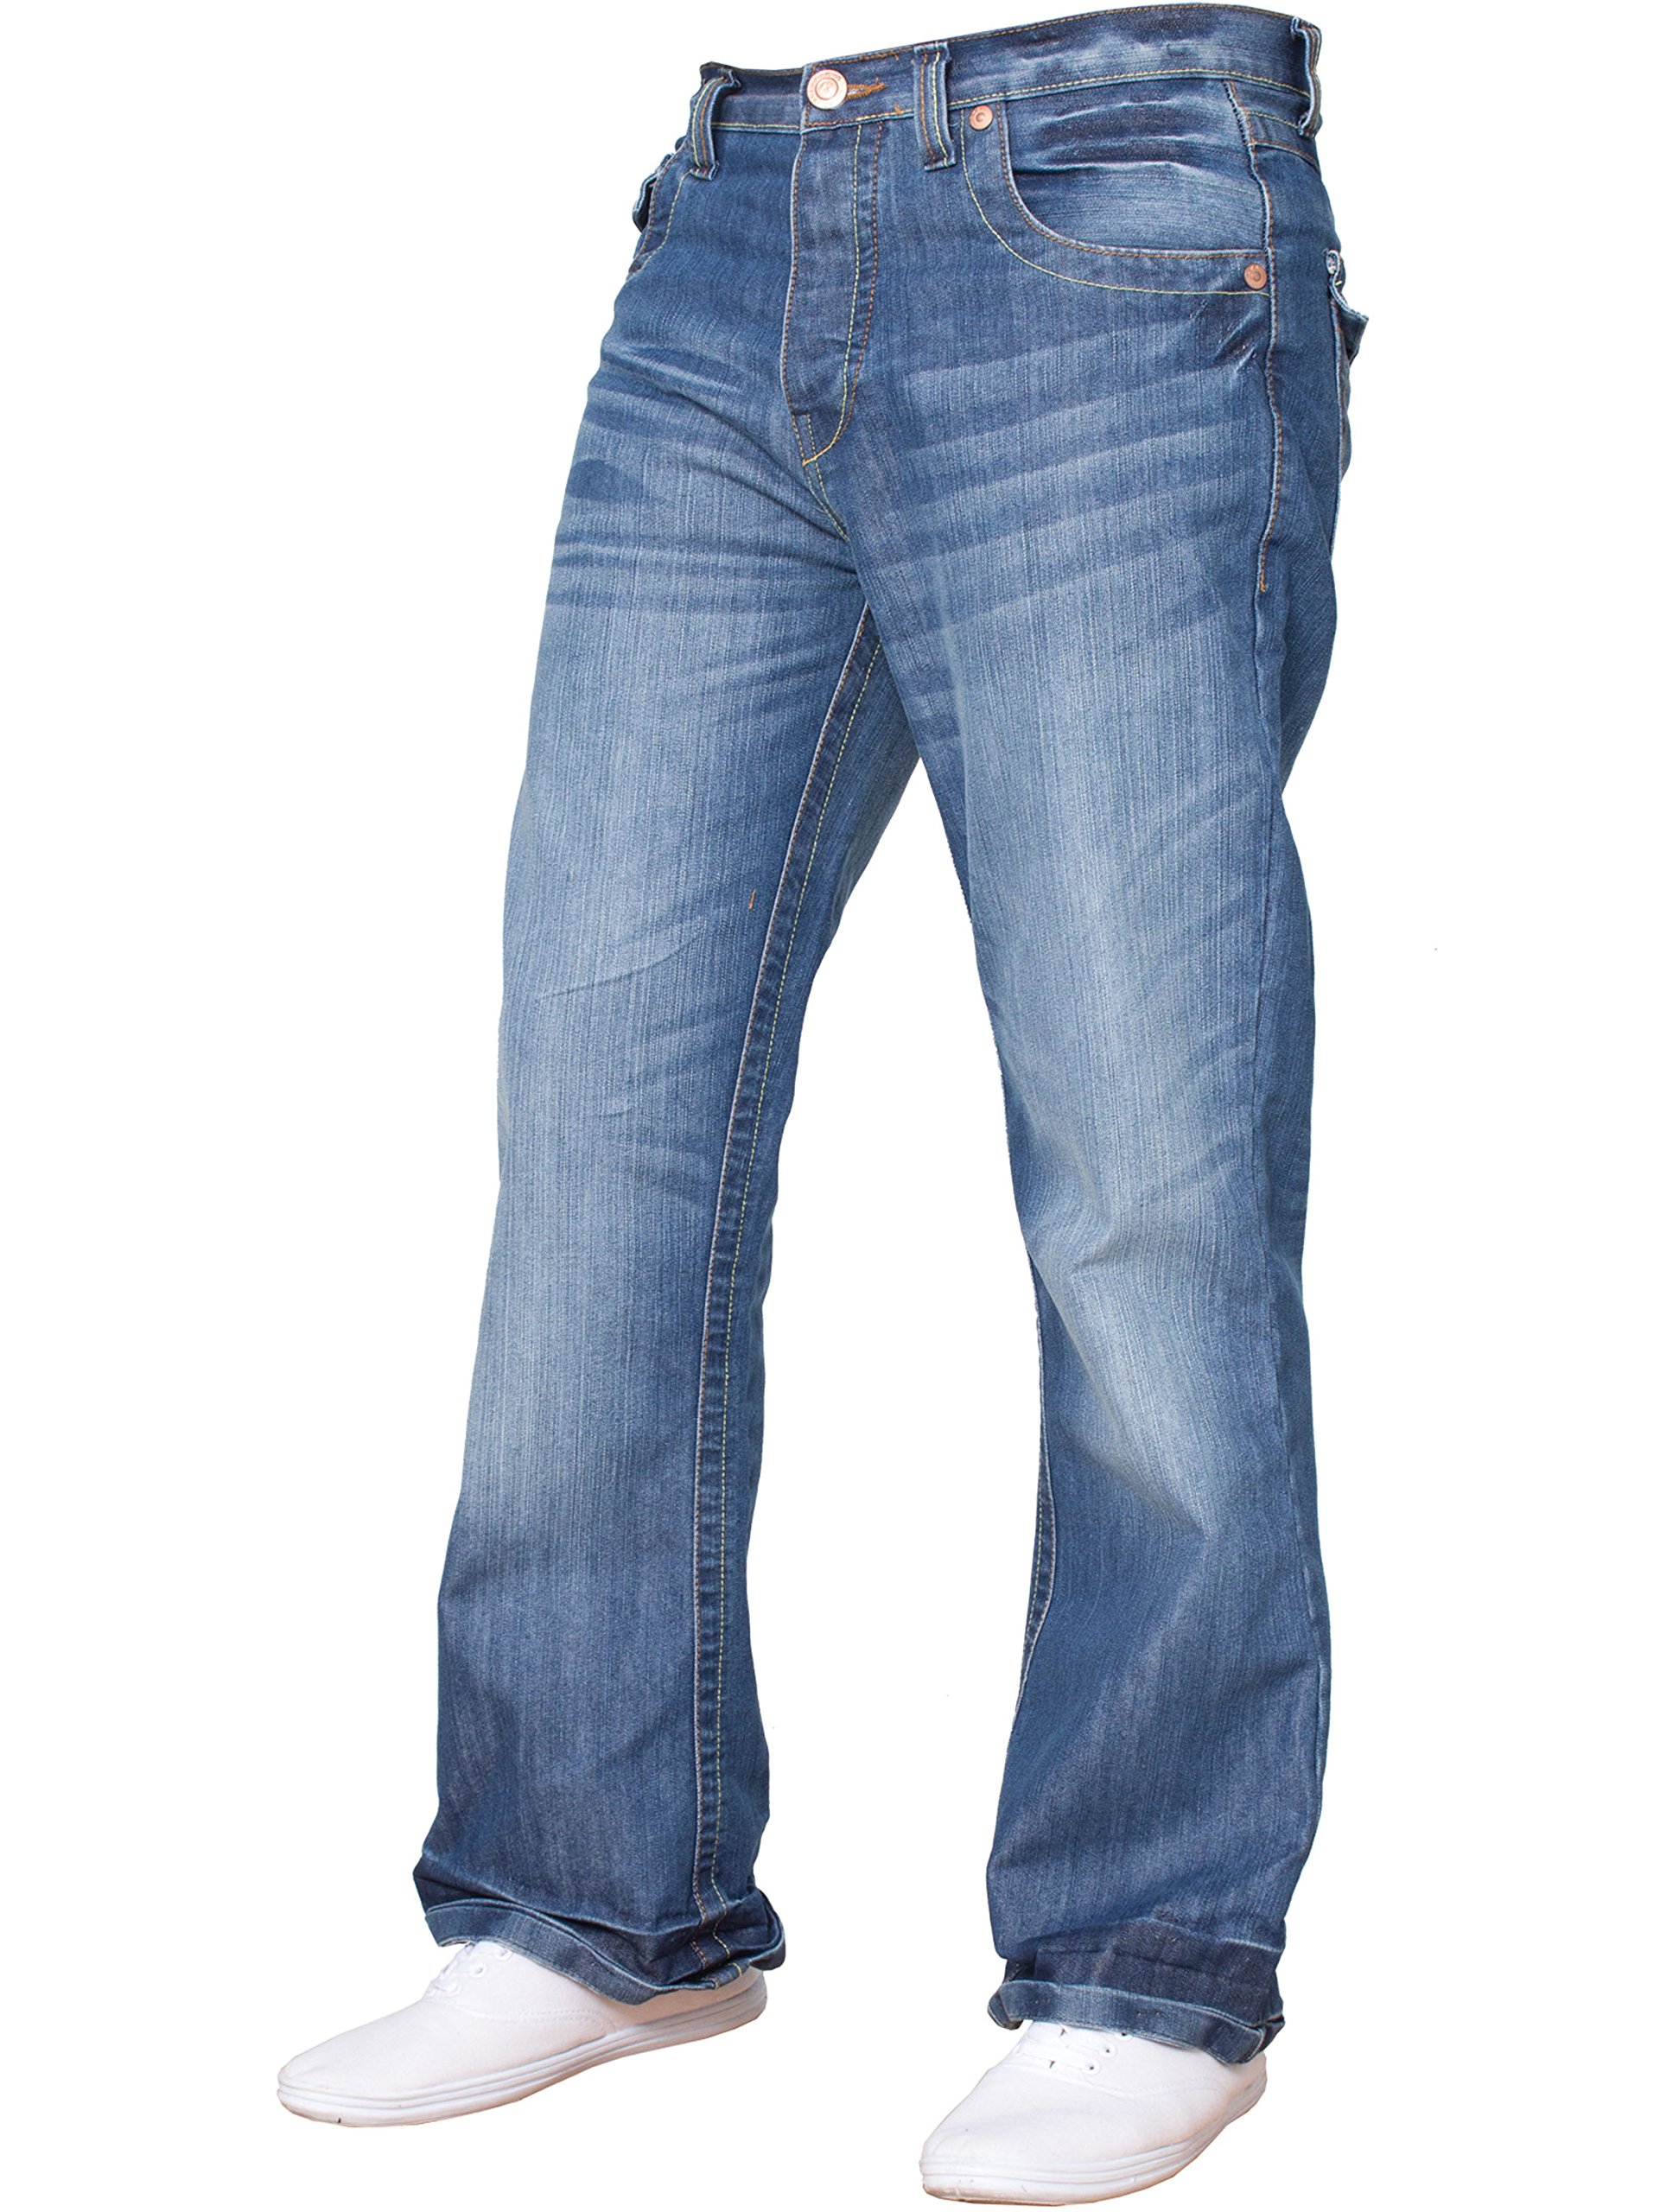 APT Herren Basic Bootcut Denim Jeans mit weitem Bein, verschiedene Taillengrößen und Farben erhältlich, blau, 40 W/34 L